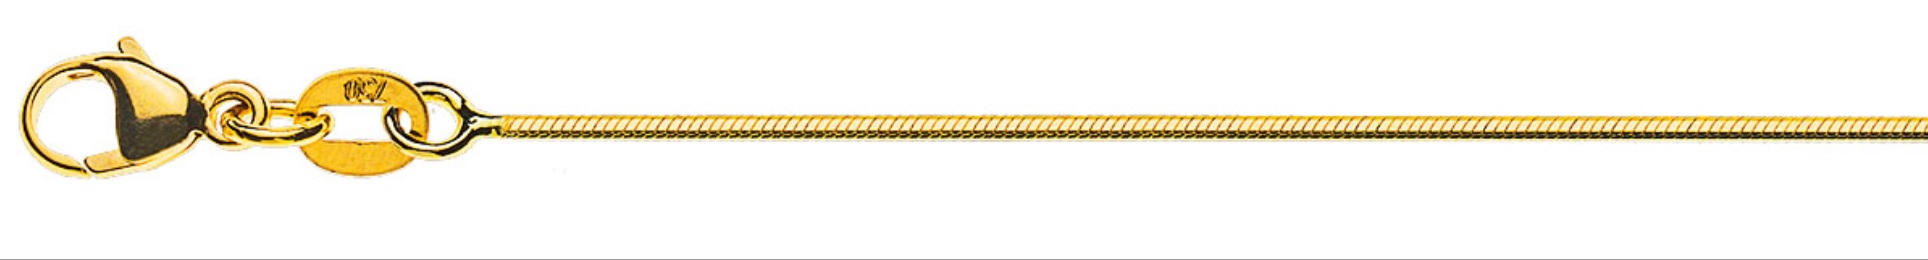 AURONOS Prestige Halskette Gelbgold 18K Schlangenkette diamantiert 42cm 1.0mm